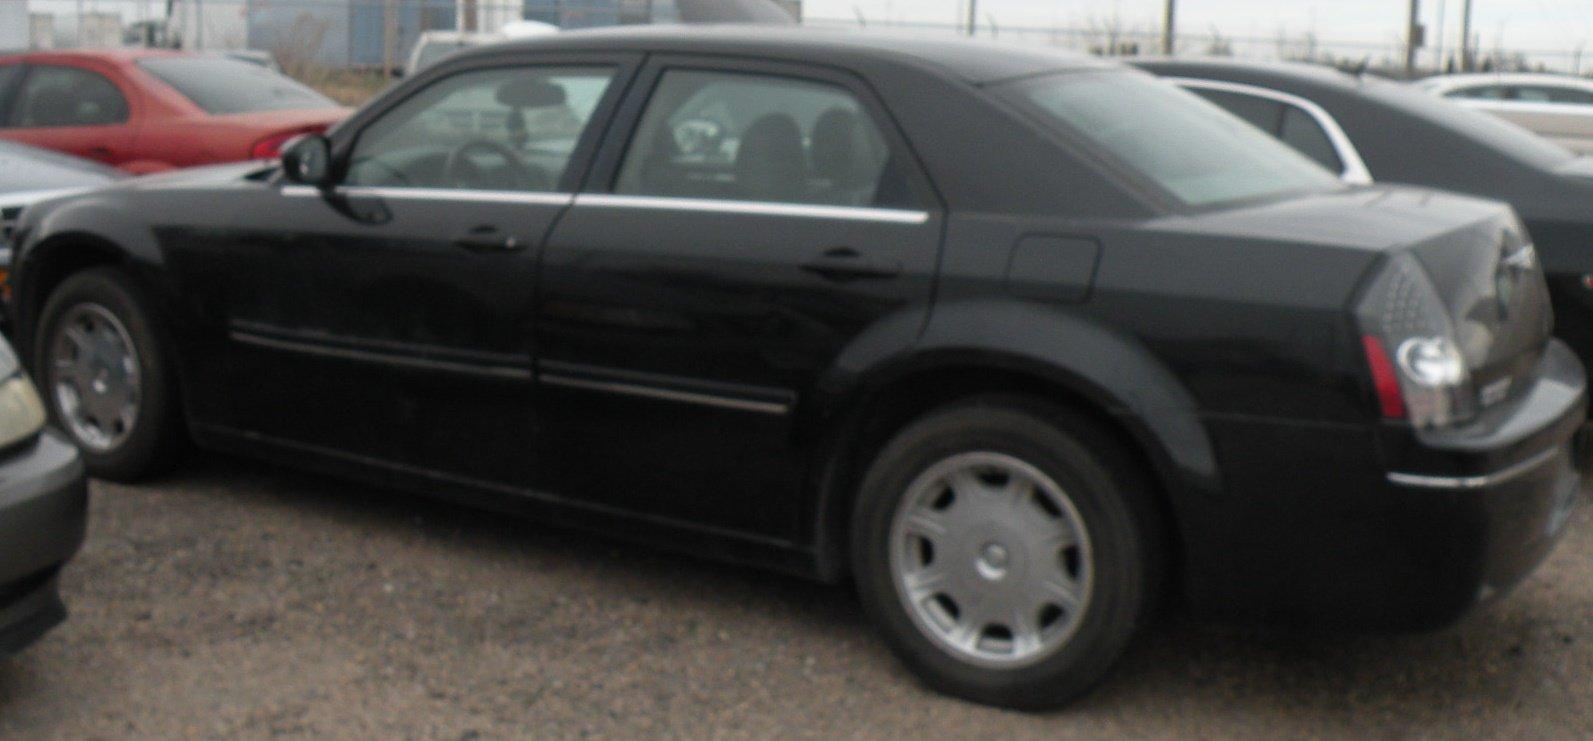 2005 CHRYSLER 300 - BLACK 4 DOOR